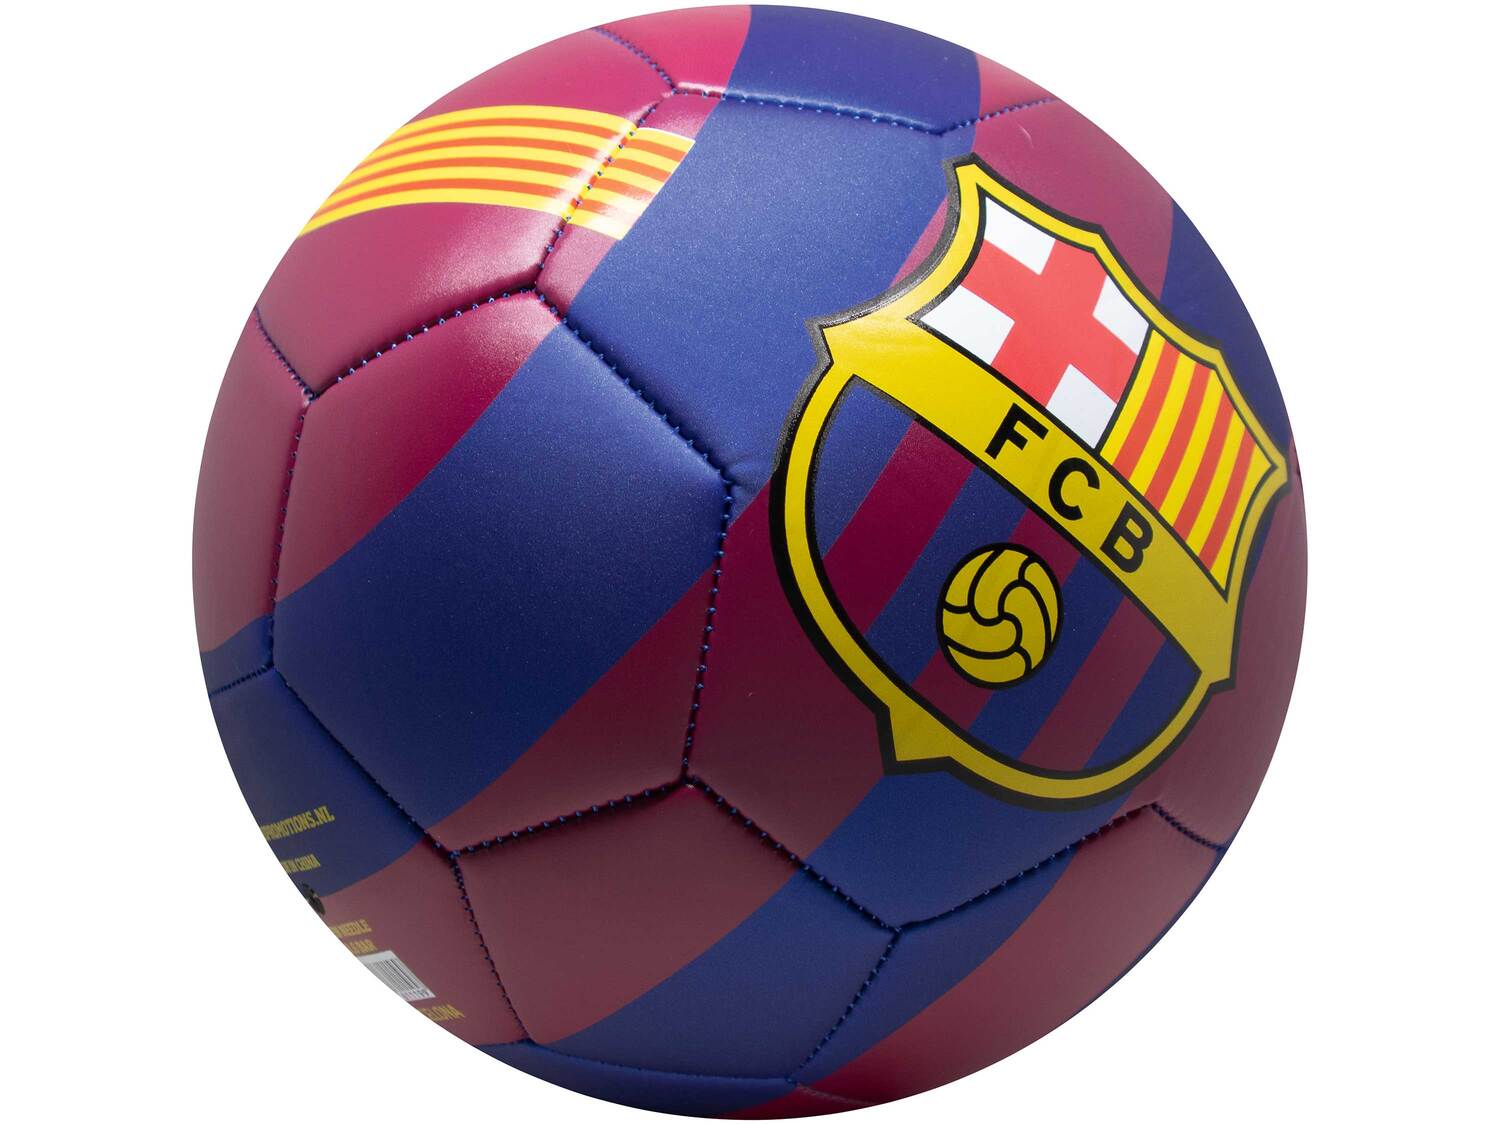 Piłka nożna FC Barcelona , cena 49,99 PLN  
4 wzory do wyboru